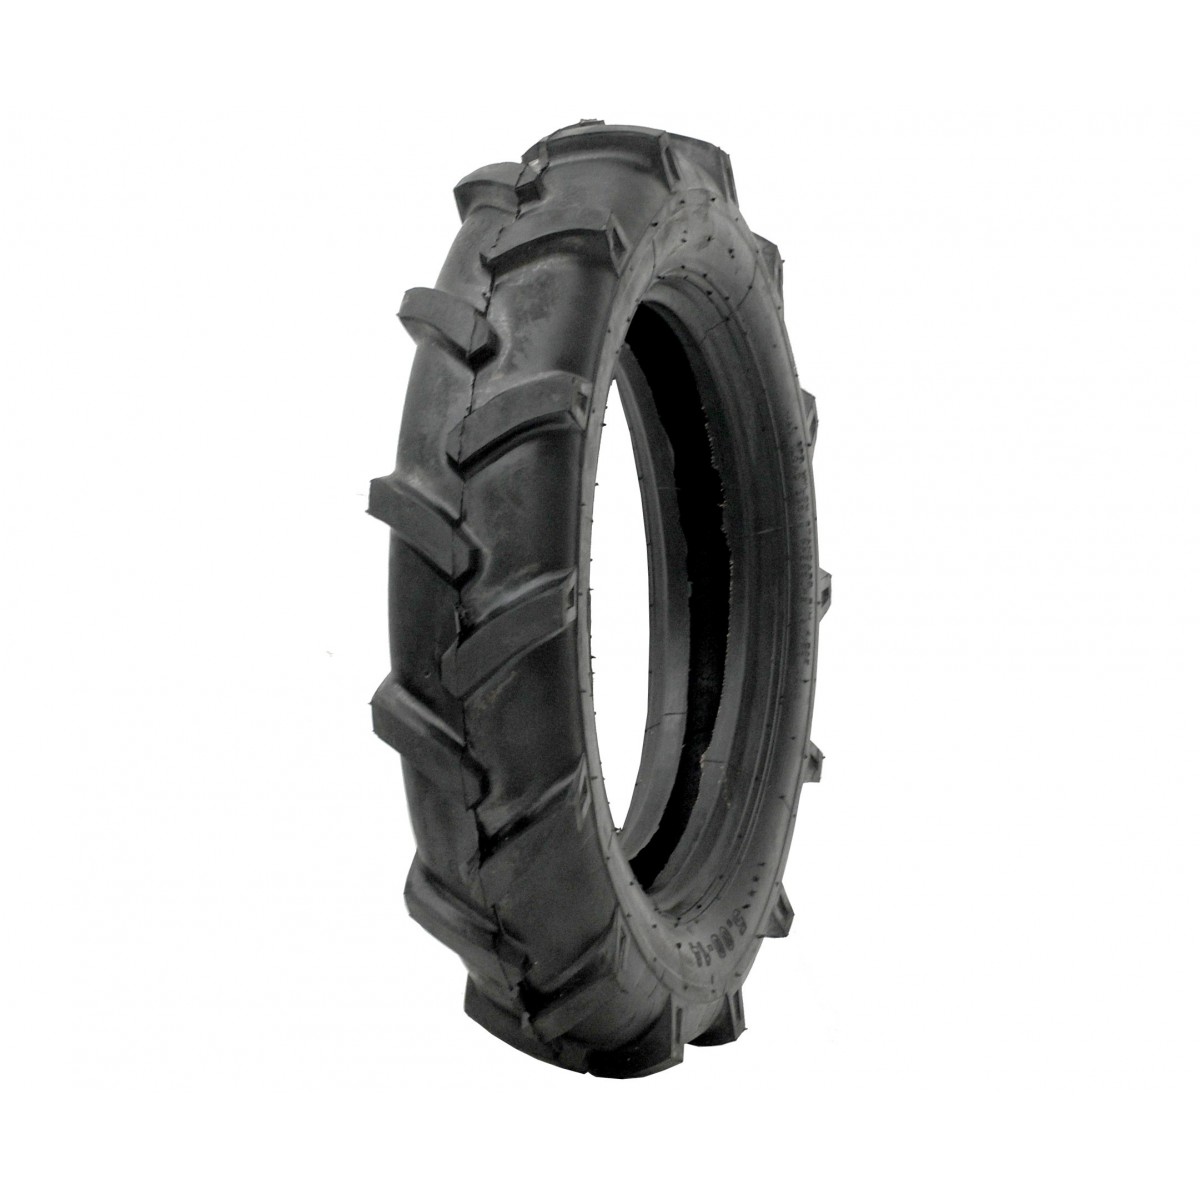 Agricultural tire 5.00-14 6PR 5-14 5x14 FIR